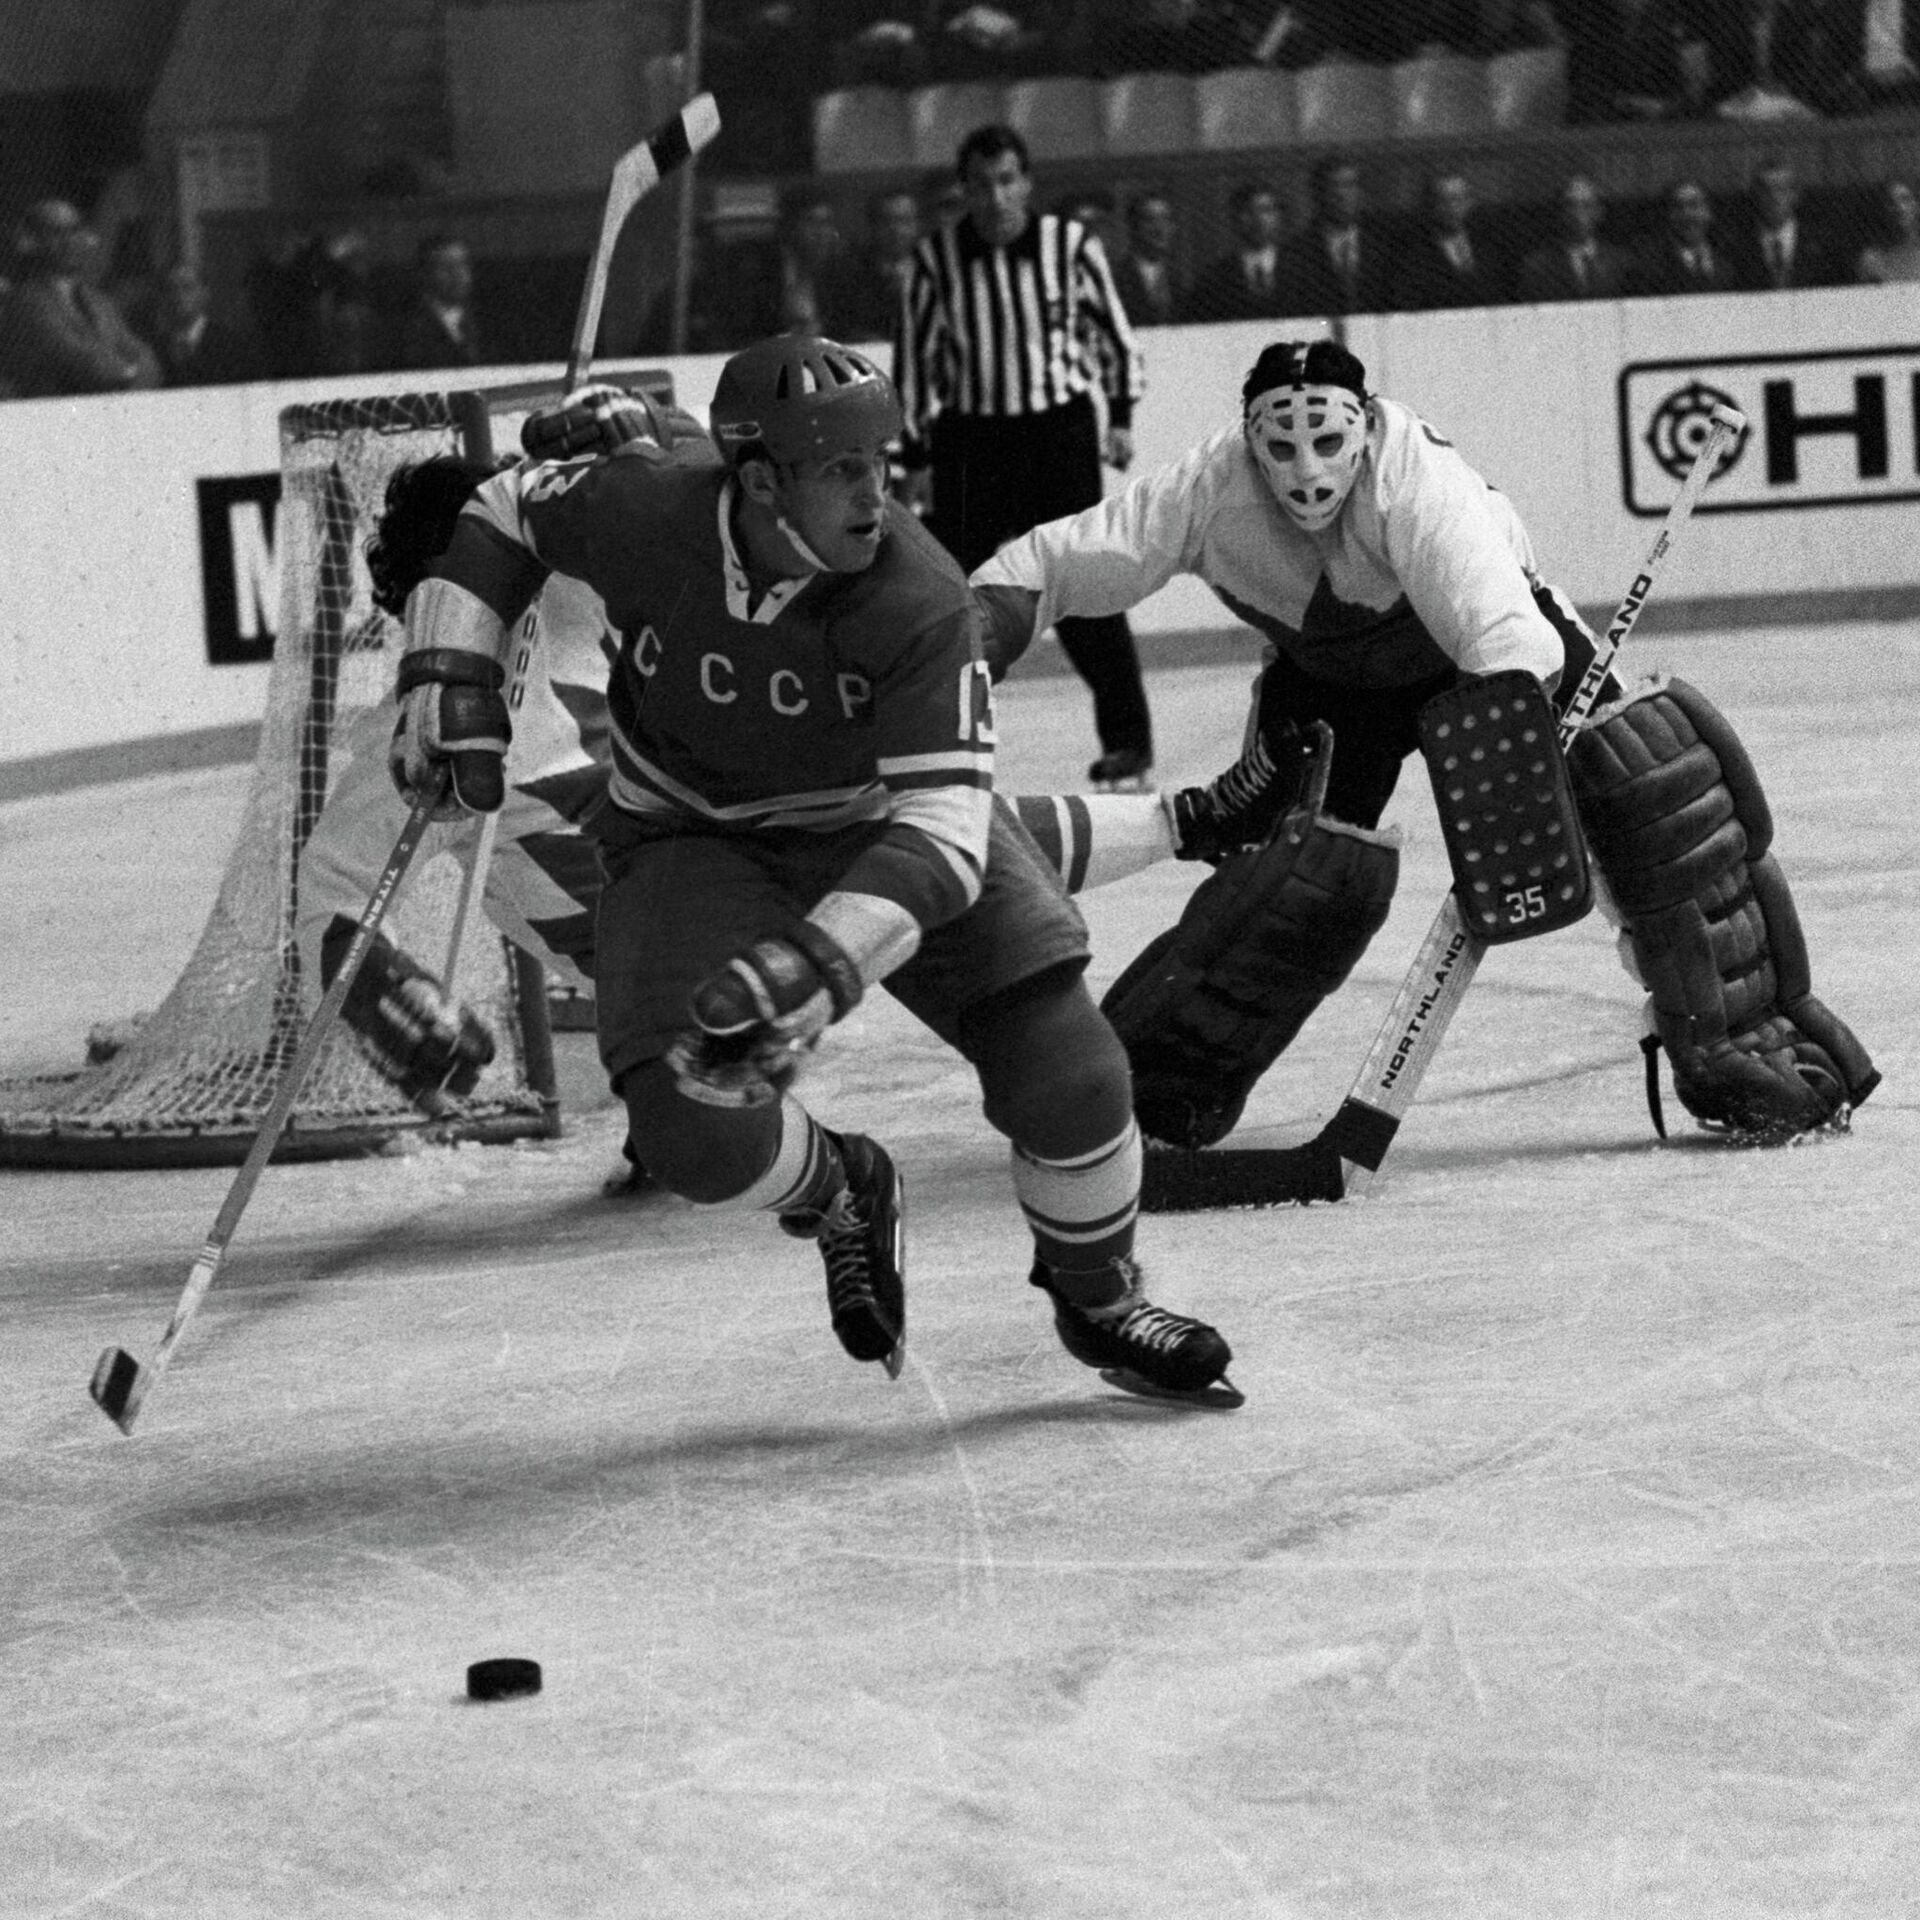 Сборная ссср по хоккею суперсерии. Харламов суперсерия 1972. Харламов хоккеист СССР Канада 1972.